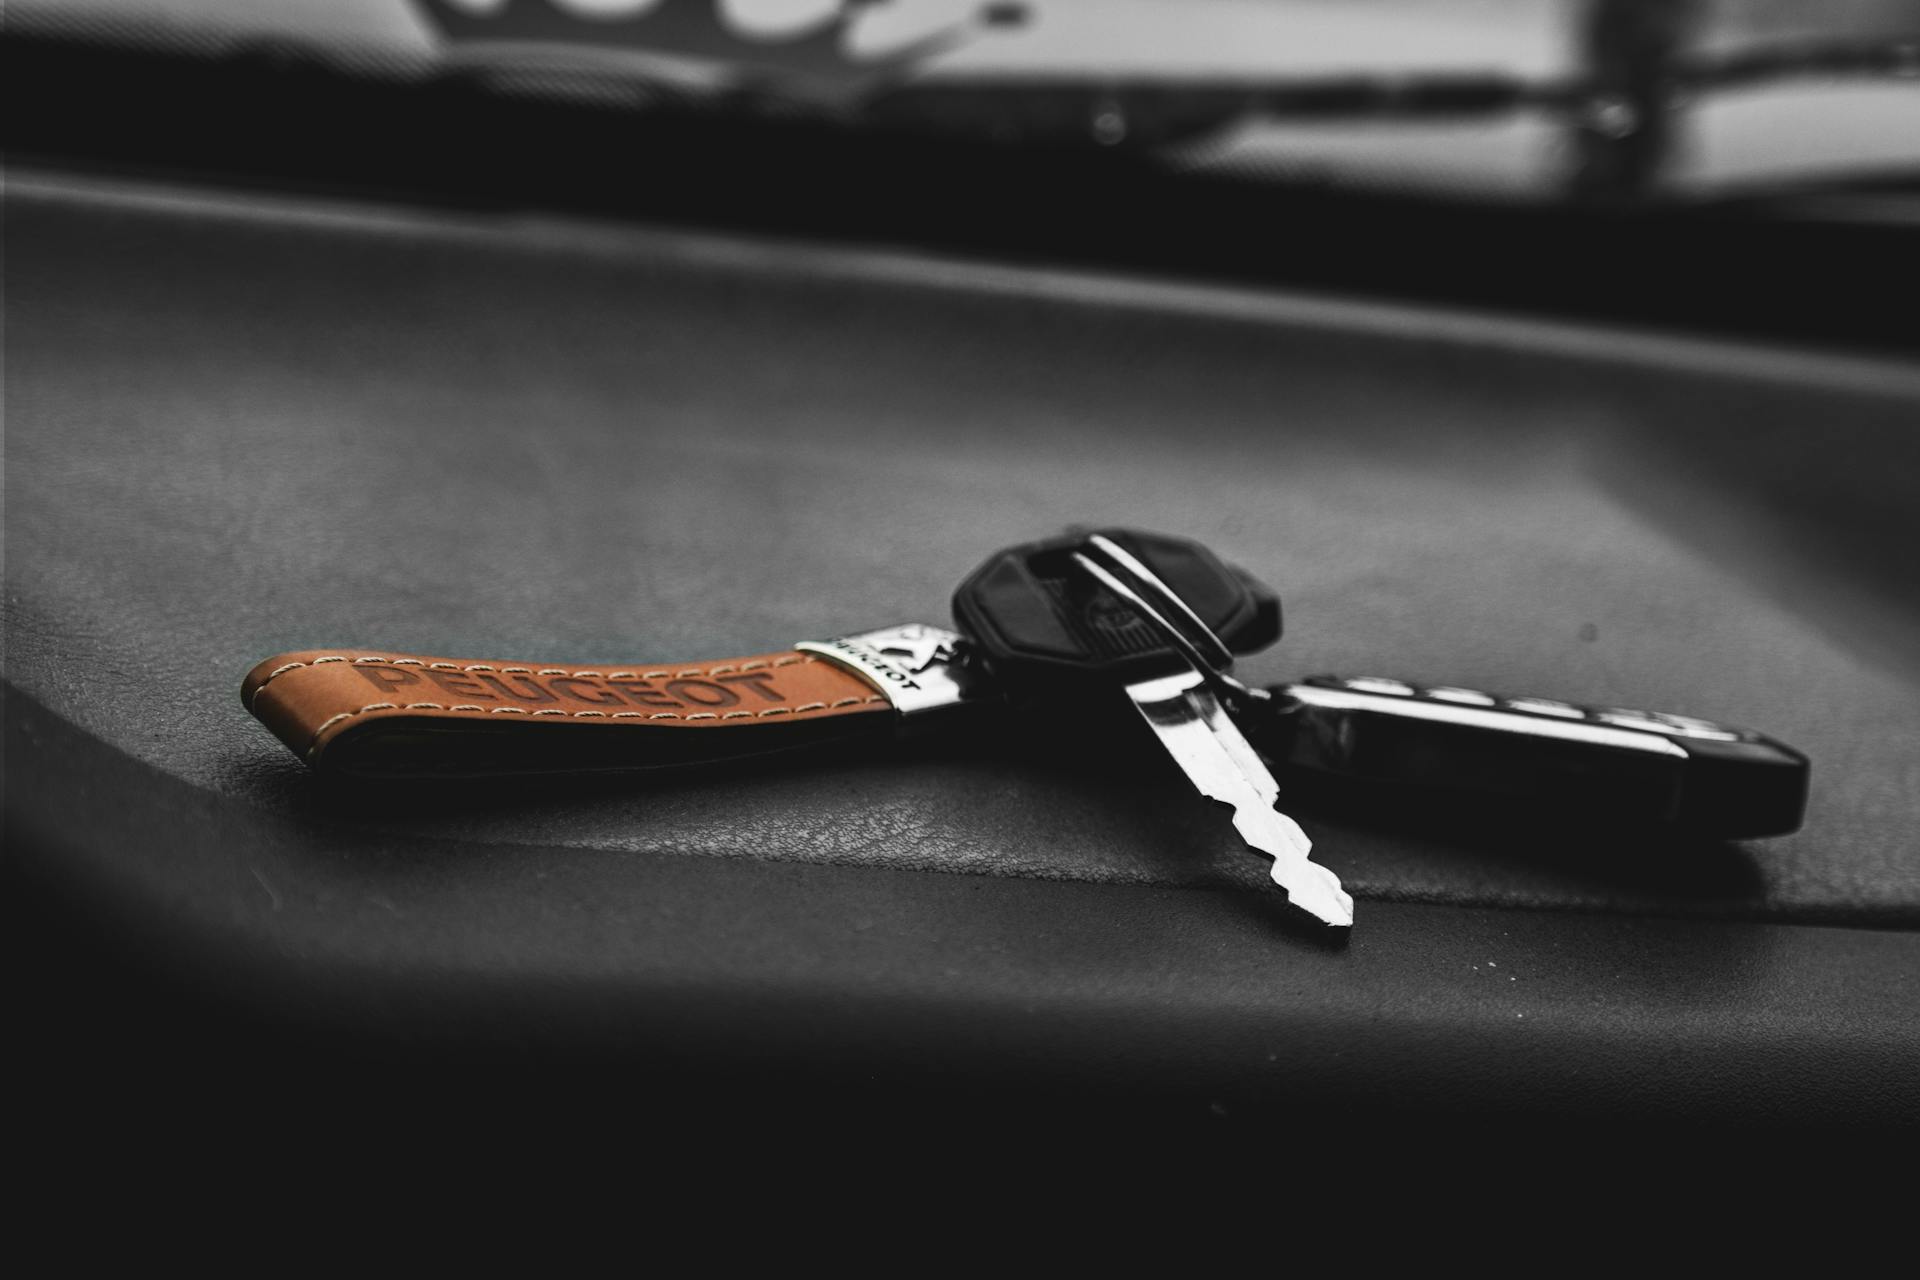 Autoschlüssel auf einer schwarzen Fläche | Quelle: Pexels